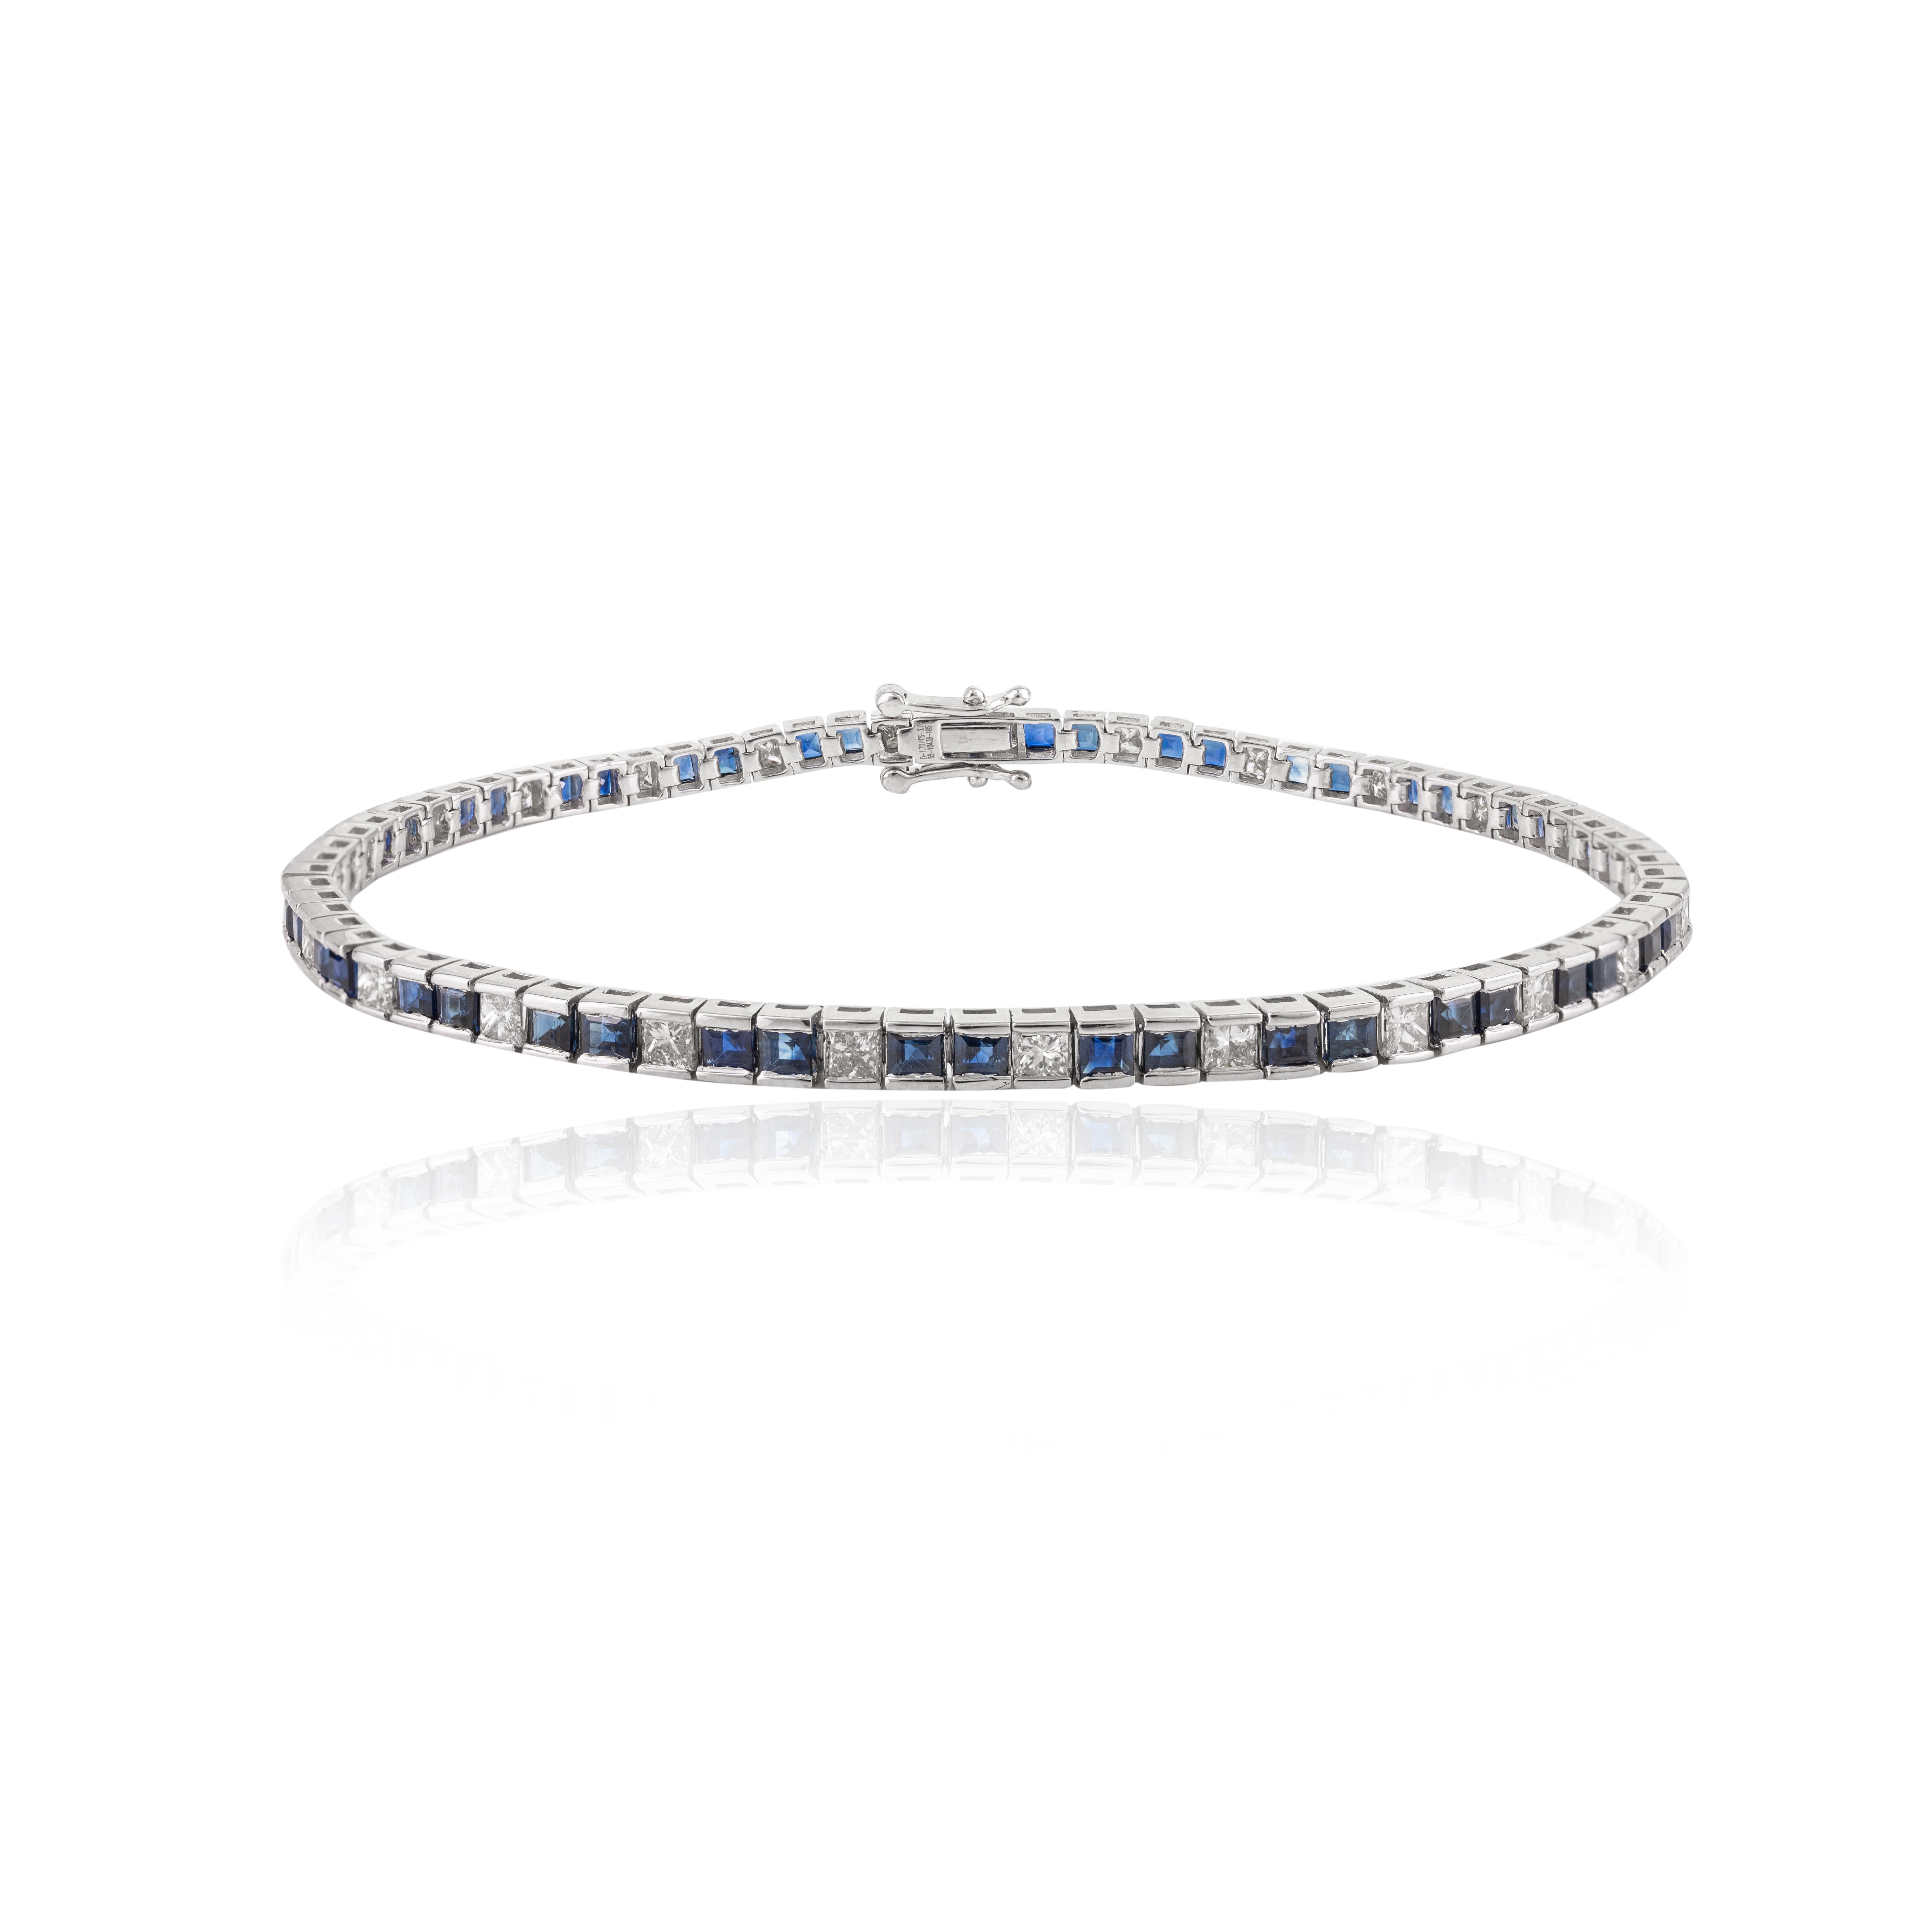 Dieses natürliche blaue Saphir-Diamant-Tennisarmband aus 18-karätigem Gold präsentiert einen natürlichen blauen Saphir von 3,76 Karat und 1,72 Karat Diamanten. Es misst 7.5 Zoll in der Länge. 
Saphir fördert die Konzentration und baut Stress ab.